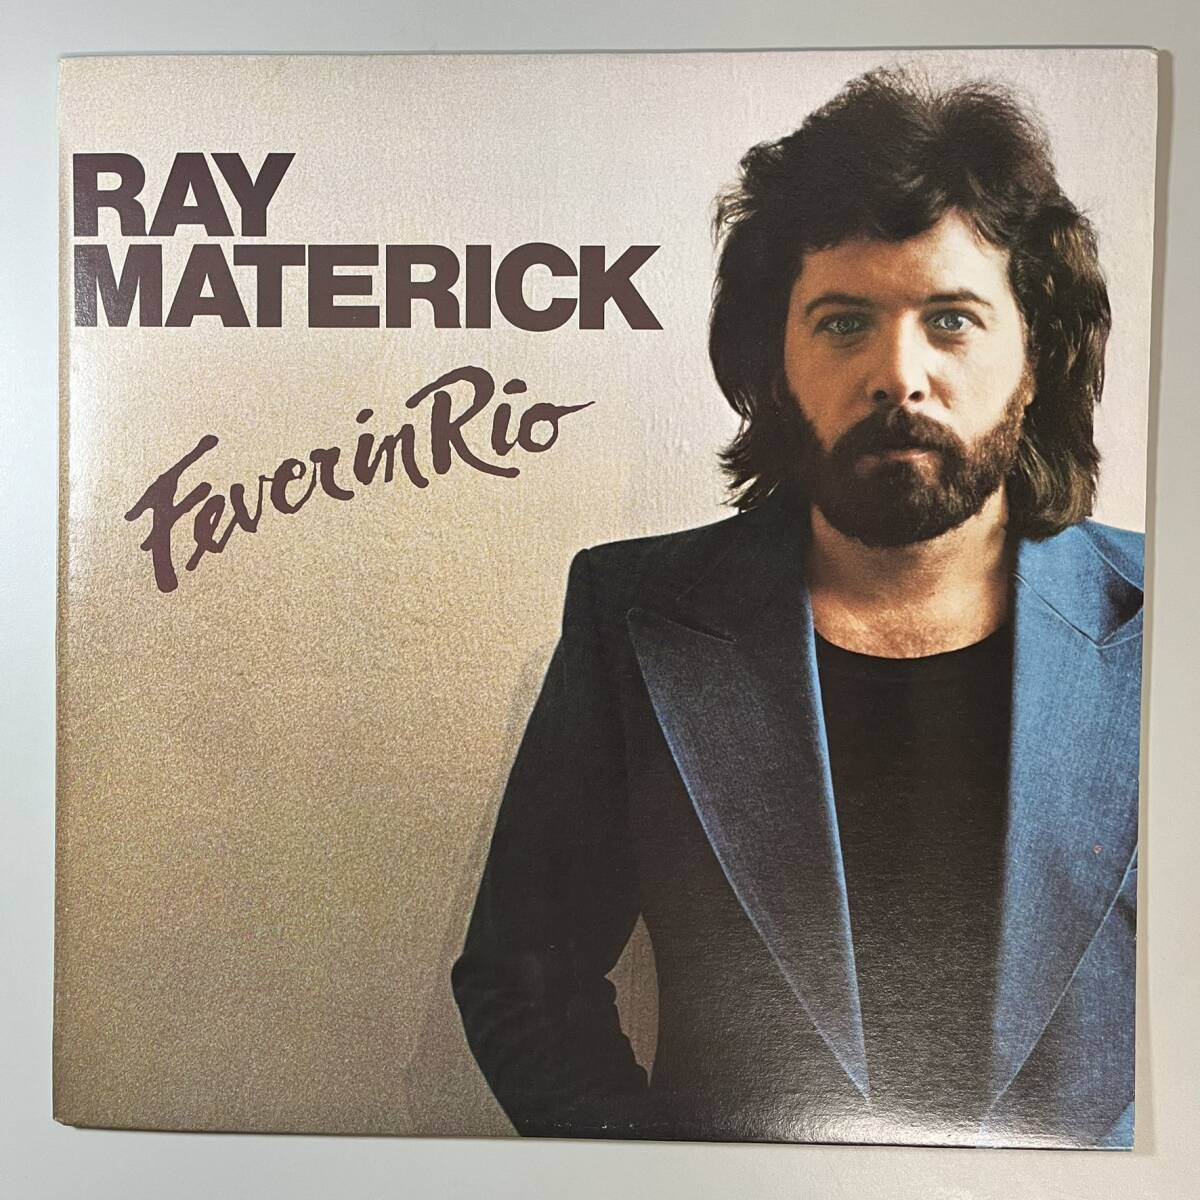 47172★美盤【カナダ盤】 Ray Materick / FEVER IN RIO _画像1